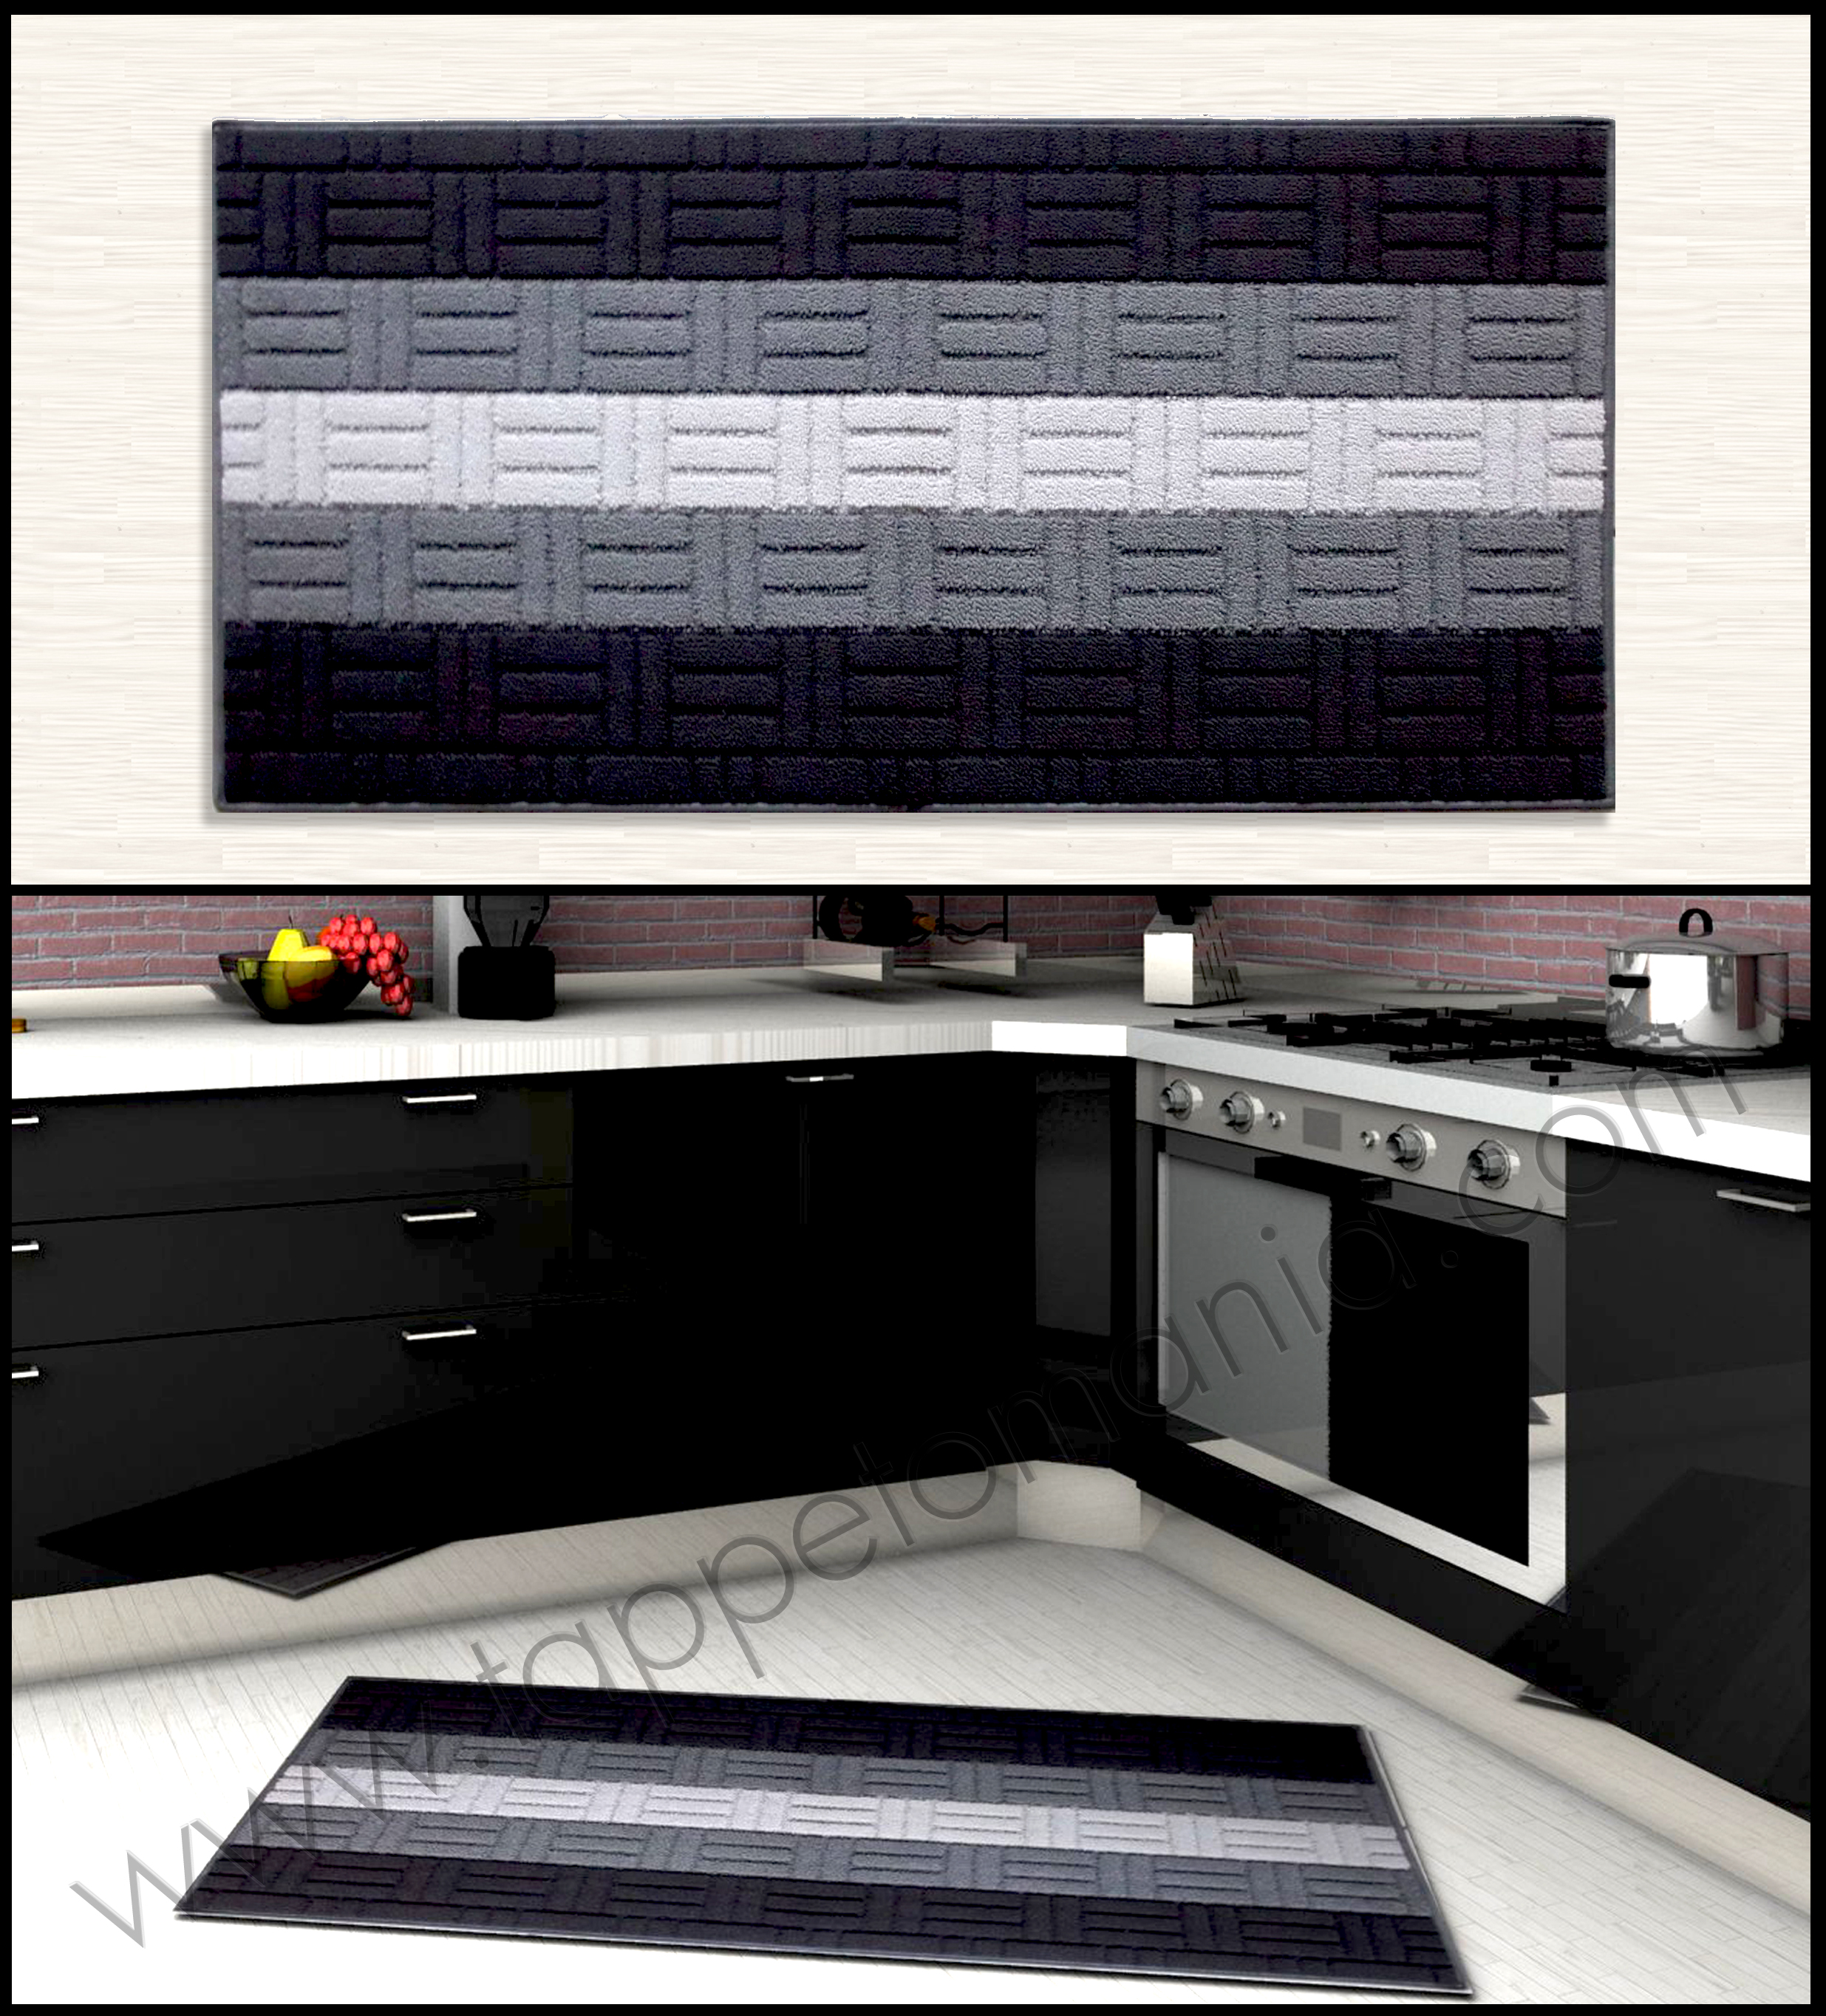 tappeti per la cucina on line a prezzi bassi colore nero grigio